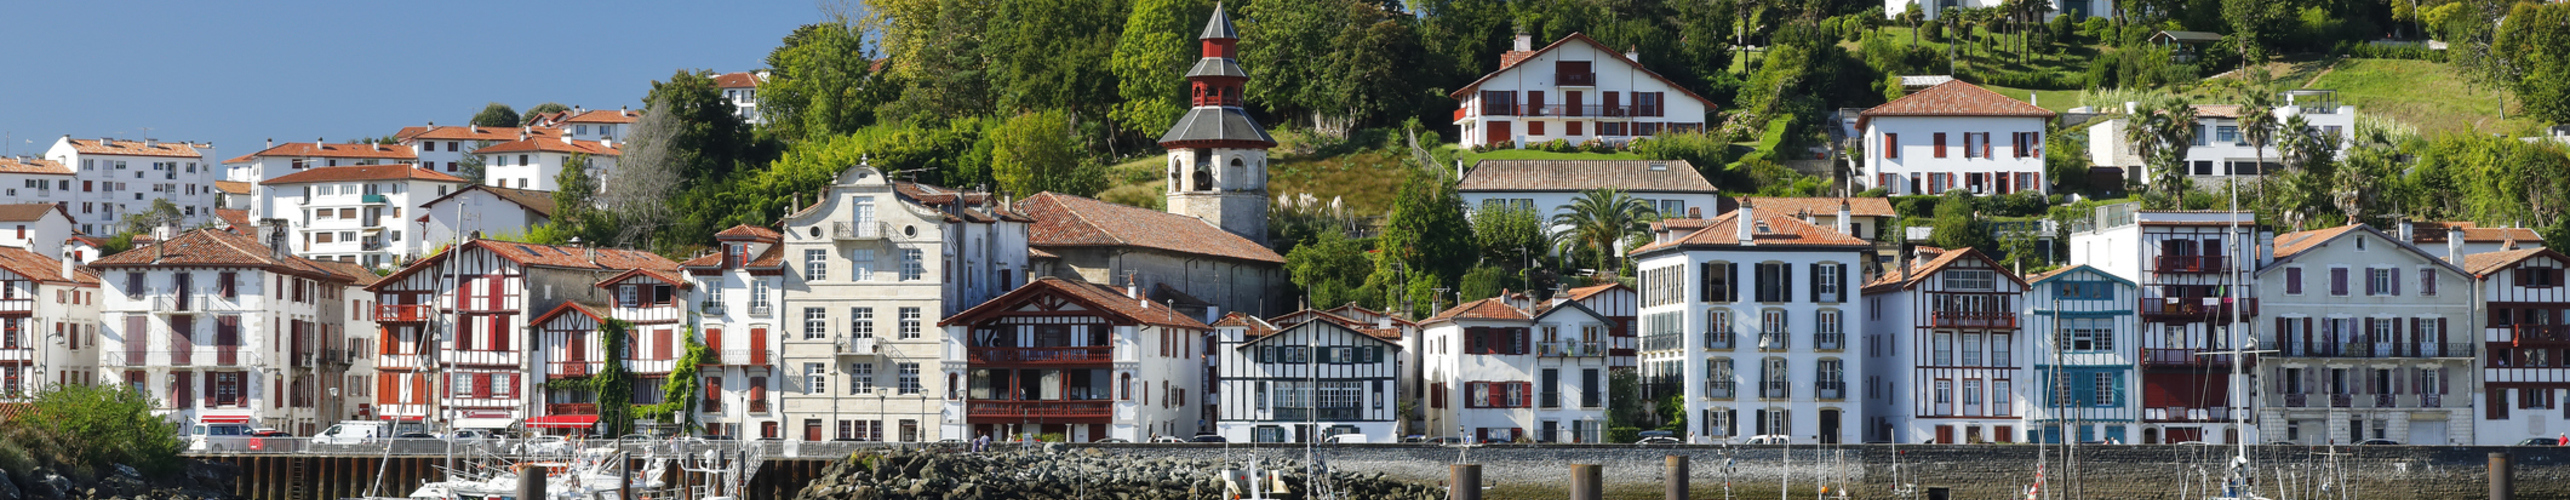 Maisons basque sur le port